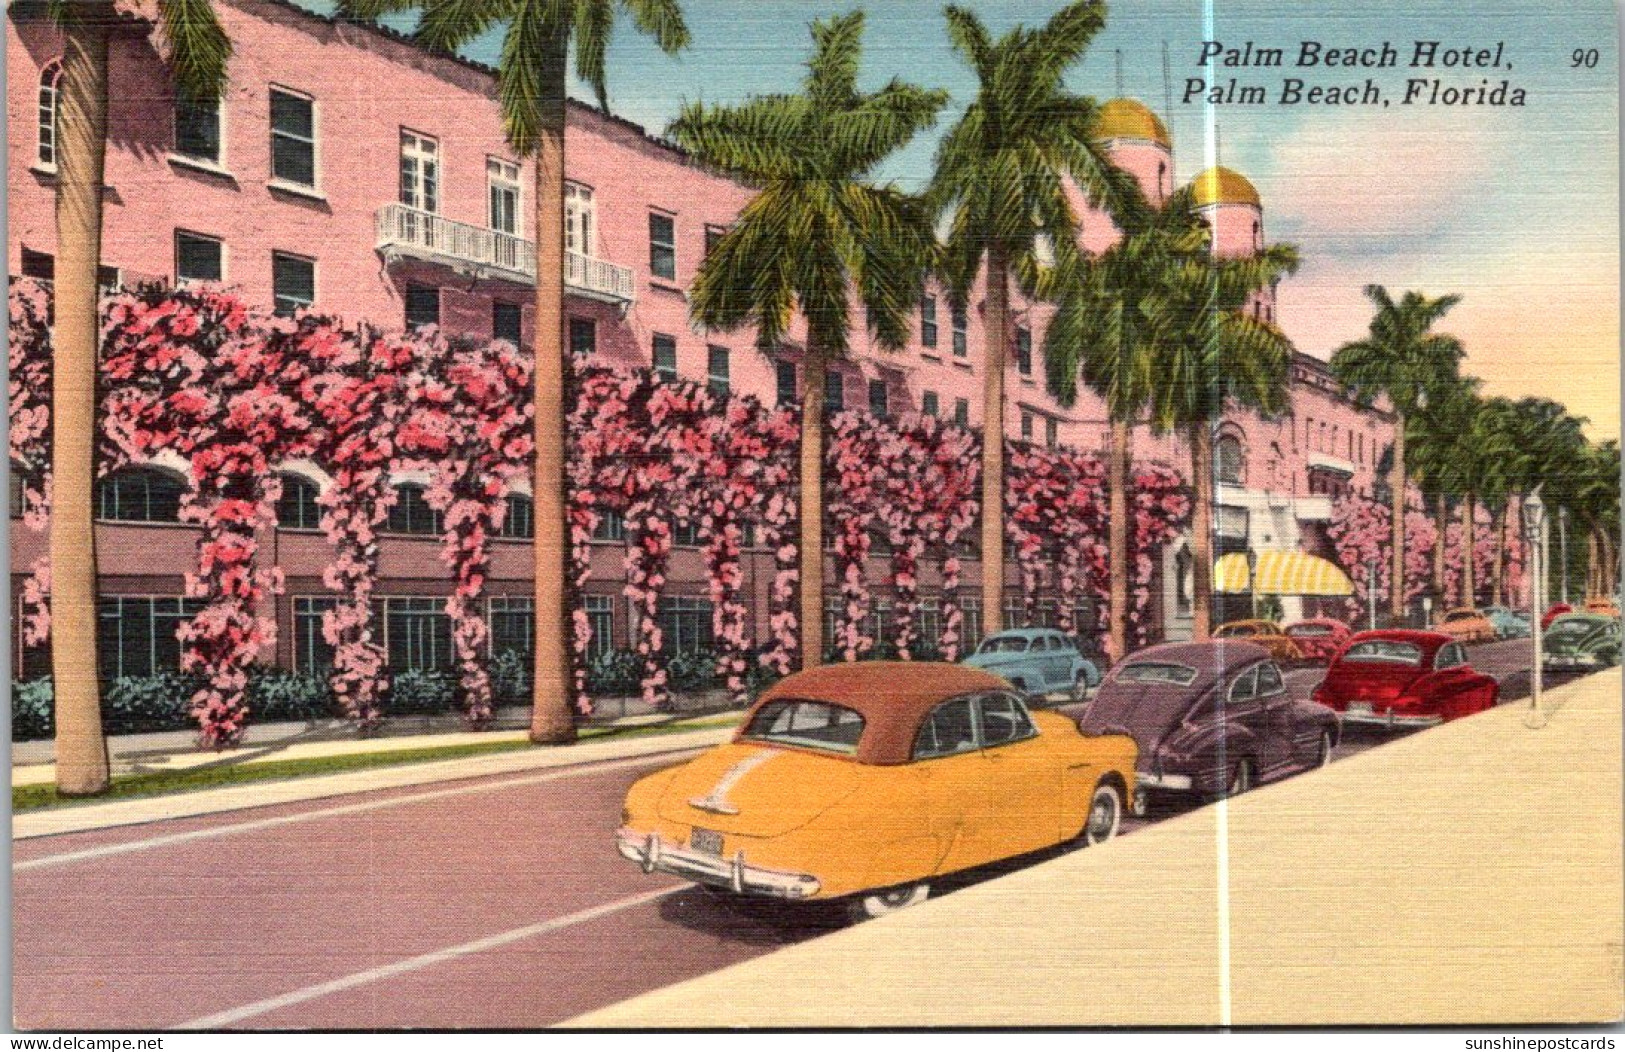 Florida Palm Beach The Palm Beach Hotel - Palm Beach